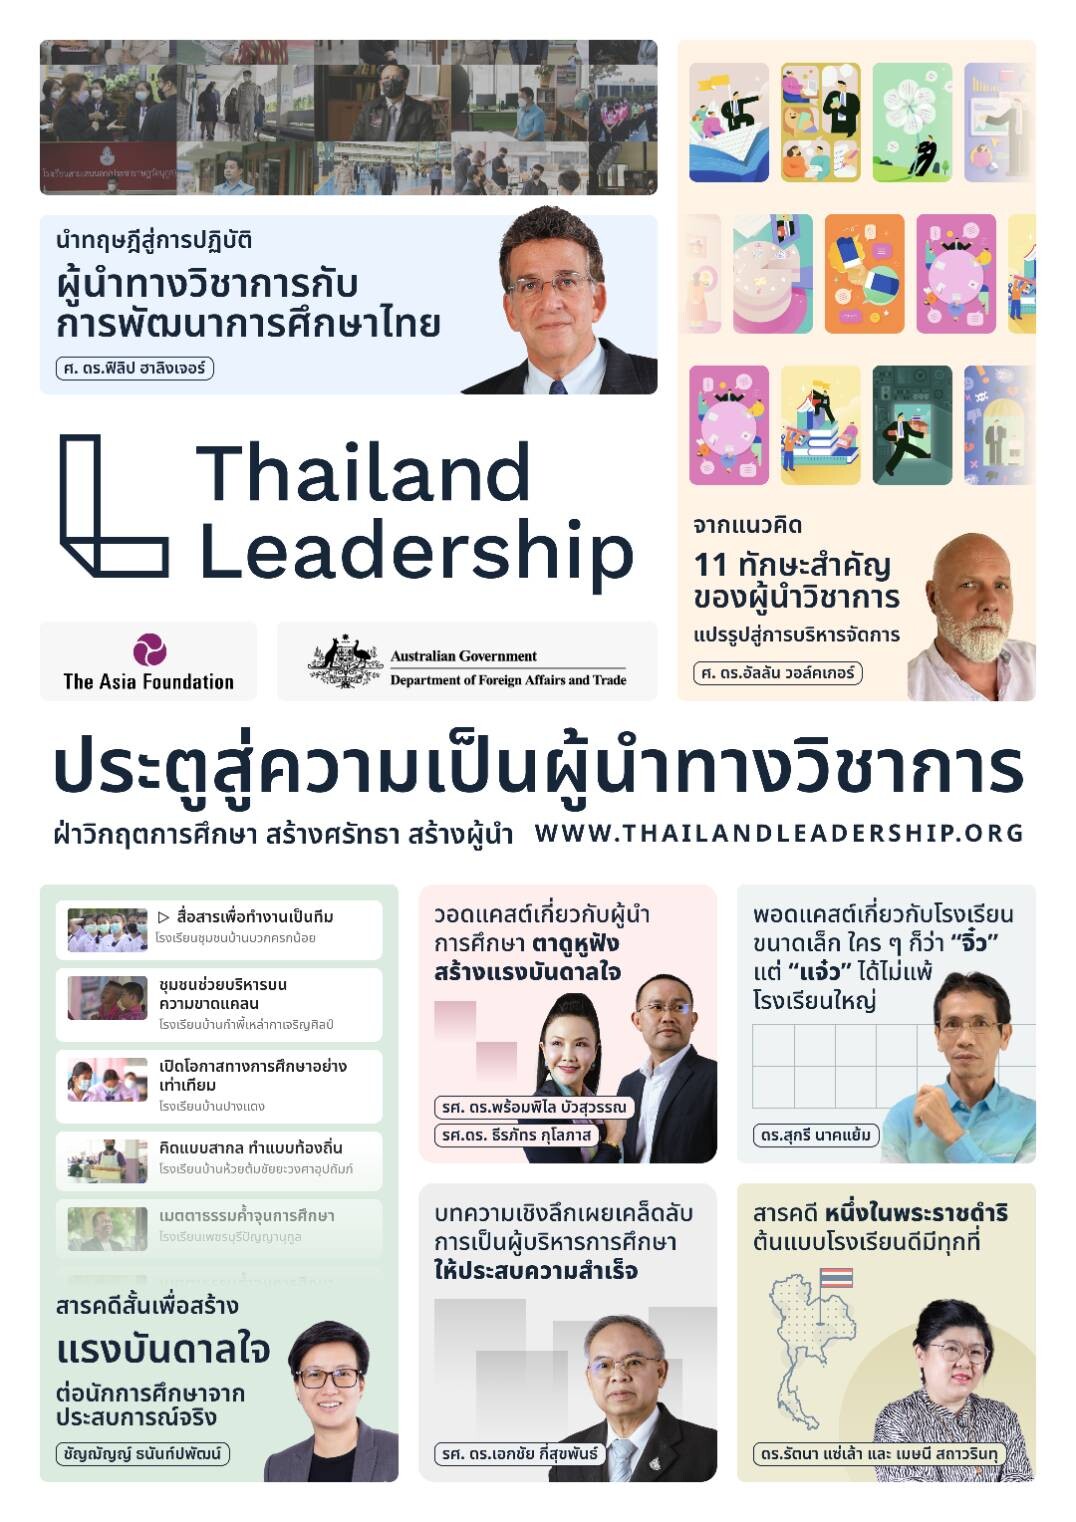 มูลนิธิเอเชีย เปิดตัว Thailand Leadership คลังความรู้ออนไลน์ผู้บริหารสถานศึกษา พัฒนาความเป็นผู้นำ ผอ.โรงเรียน